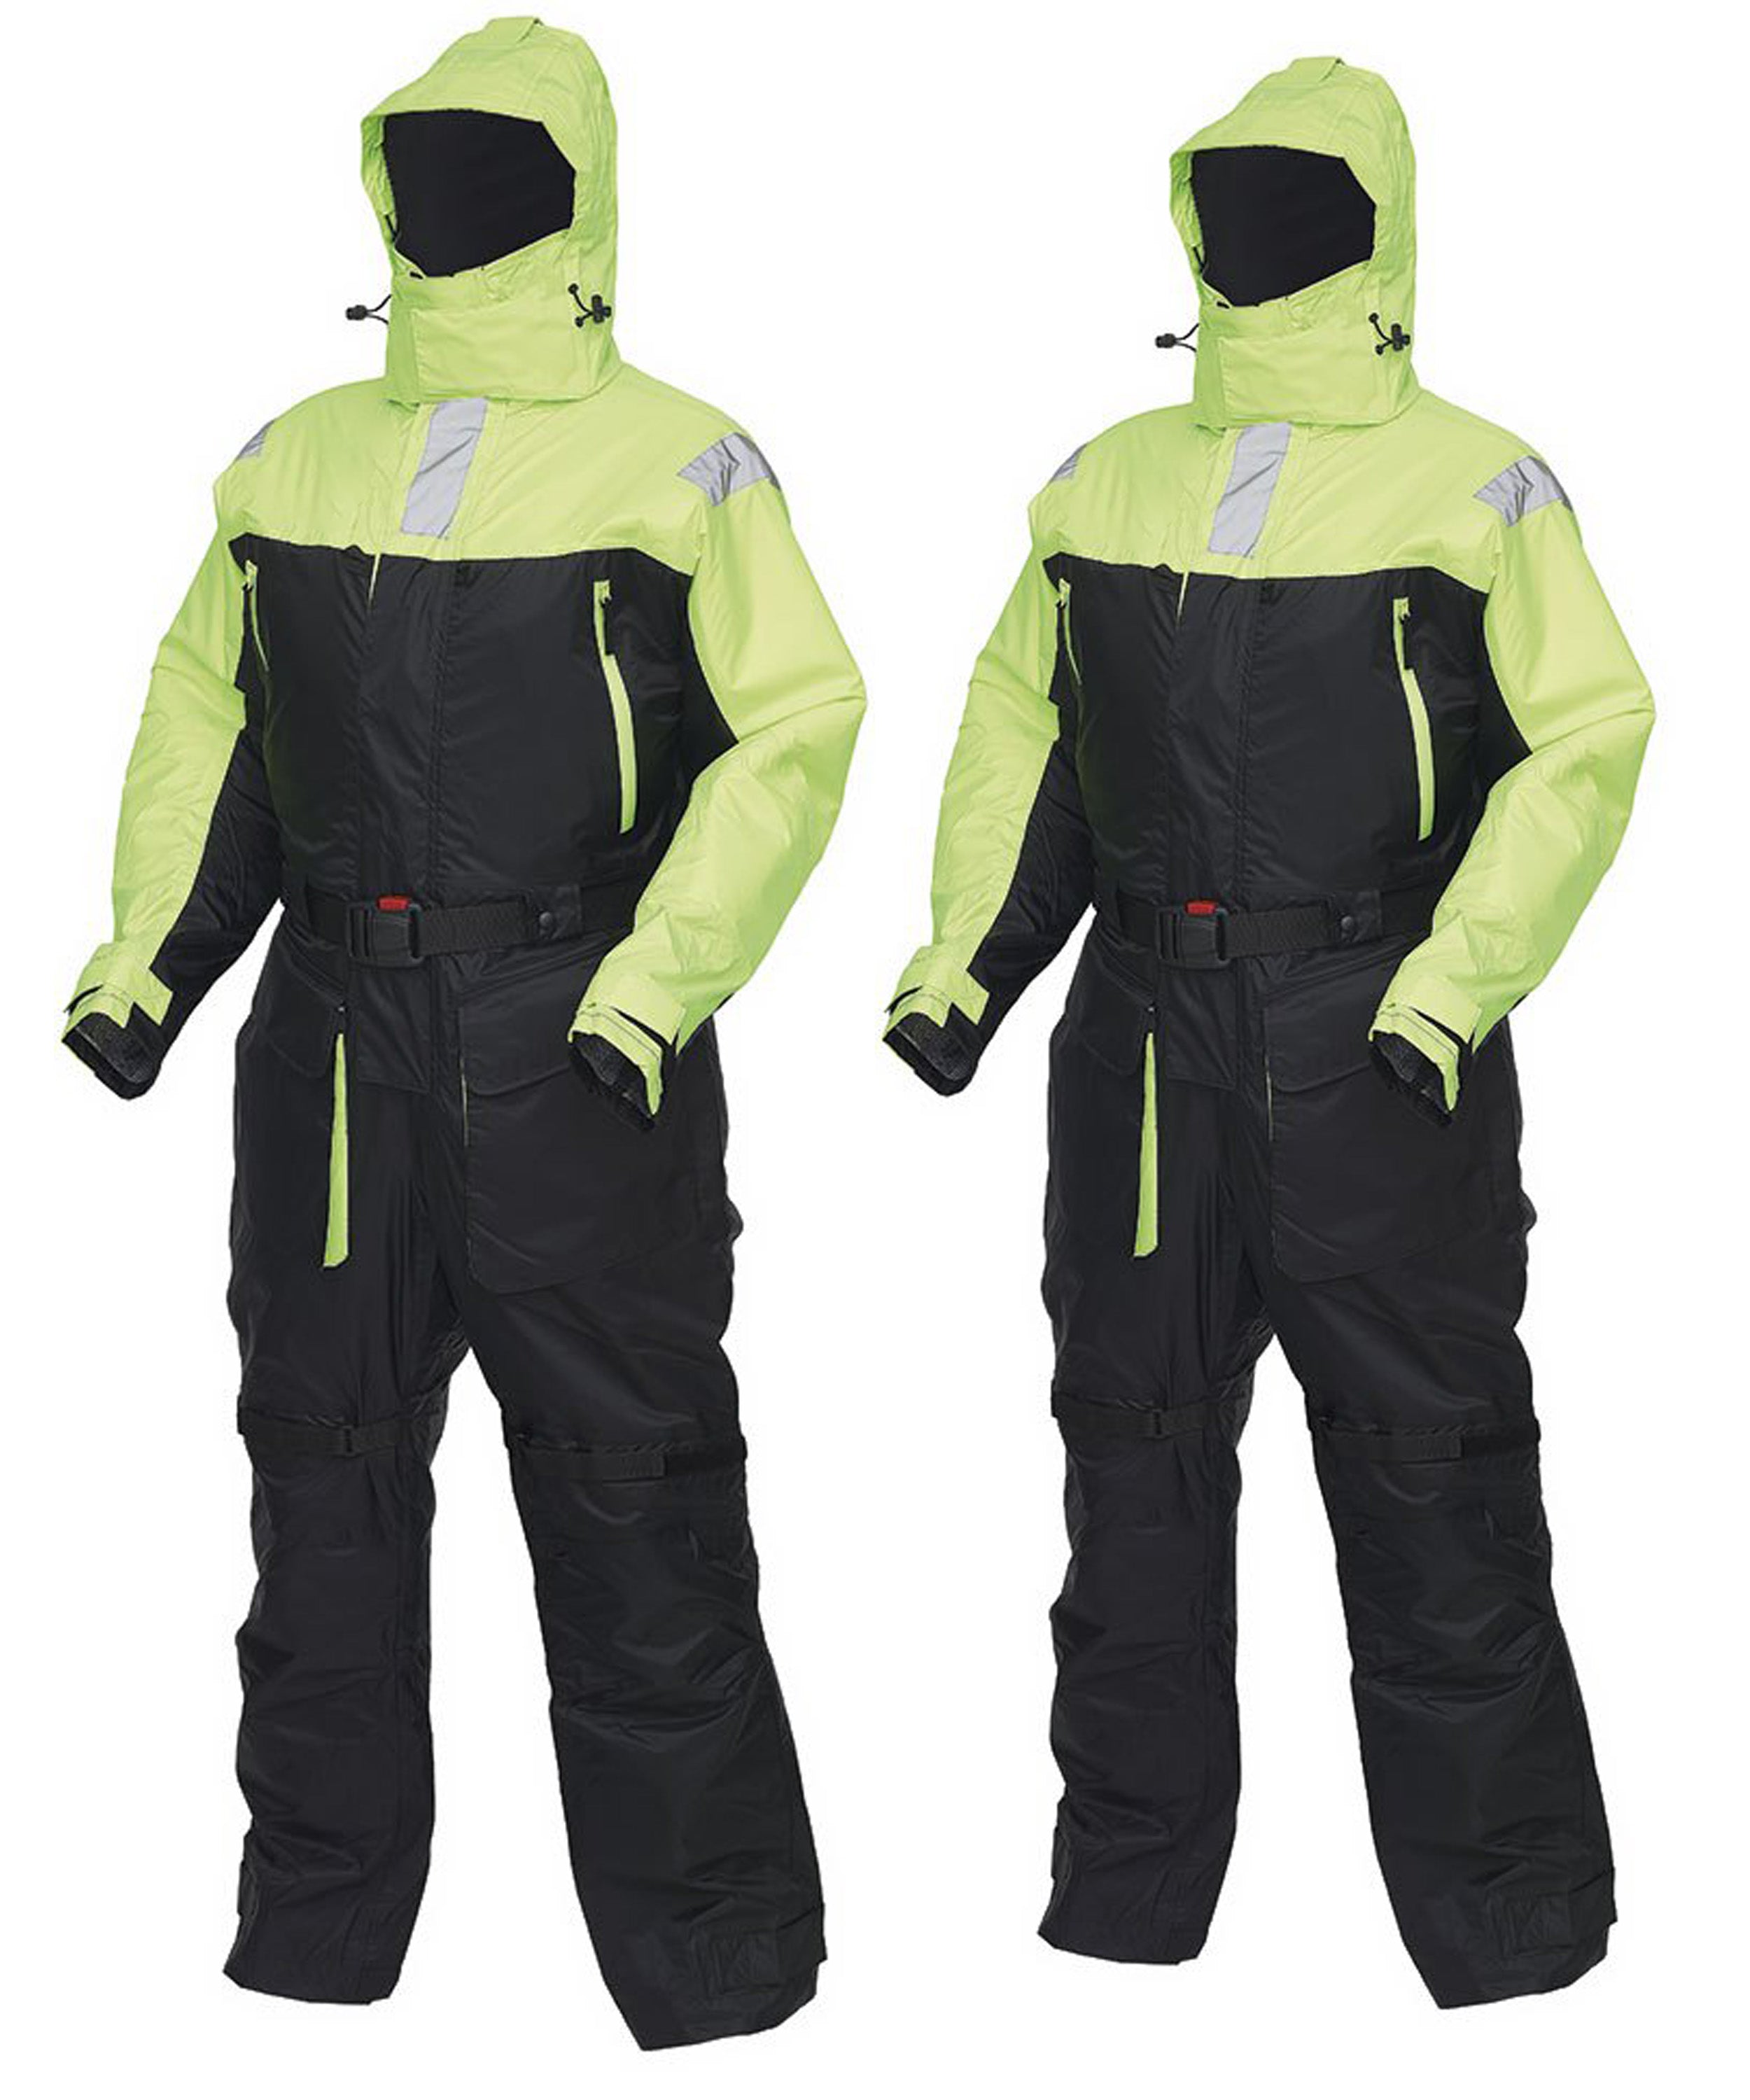 Flotation suit in green color design-09